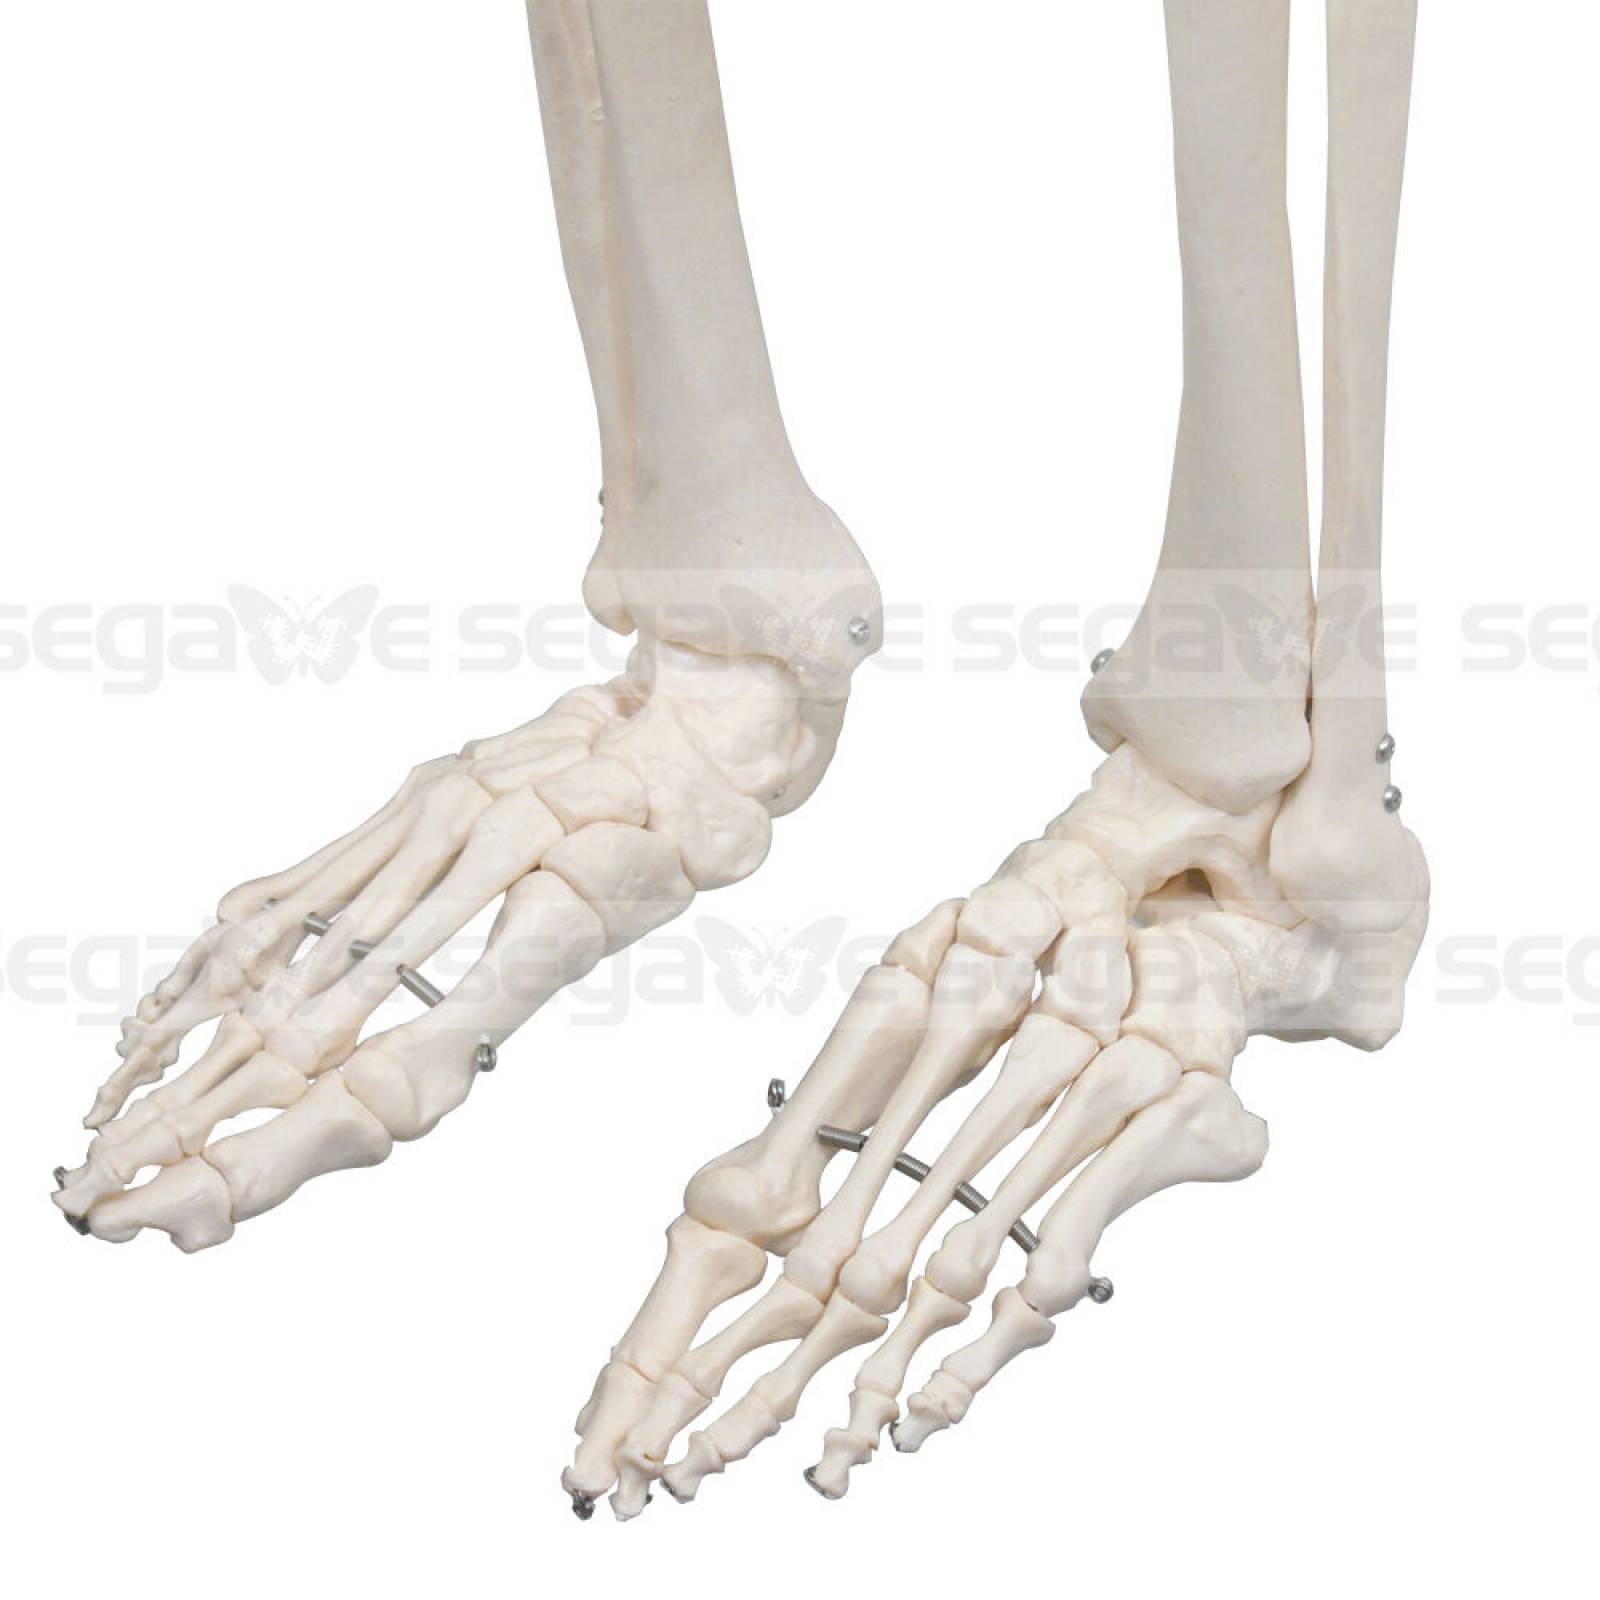 Esqueleto Humano Modelo Anatómico Tamaño 18m D01 1205 G2